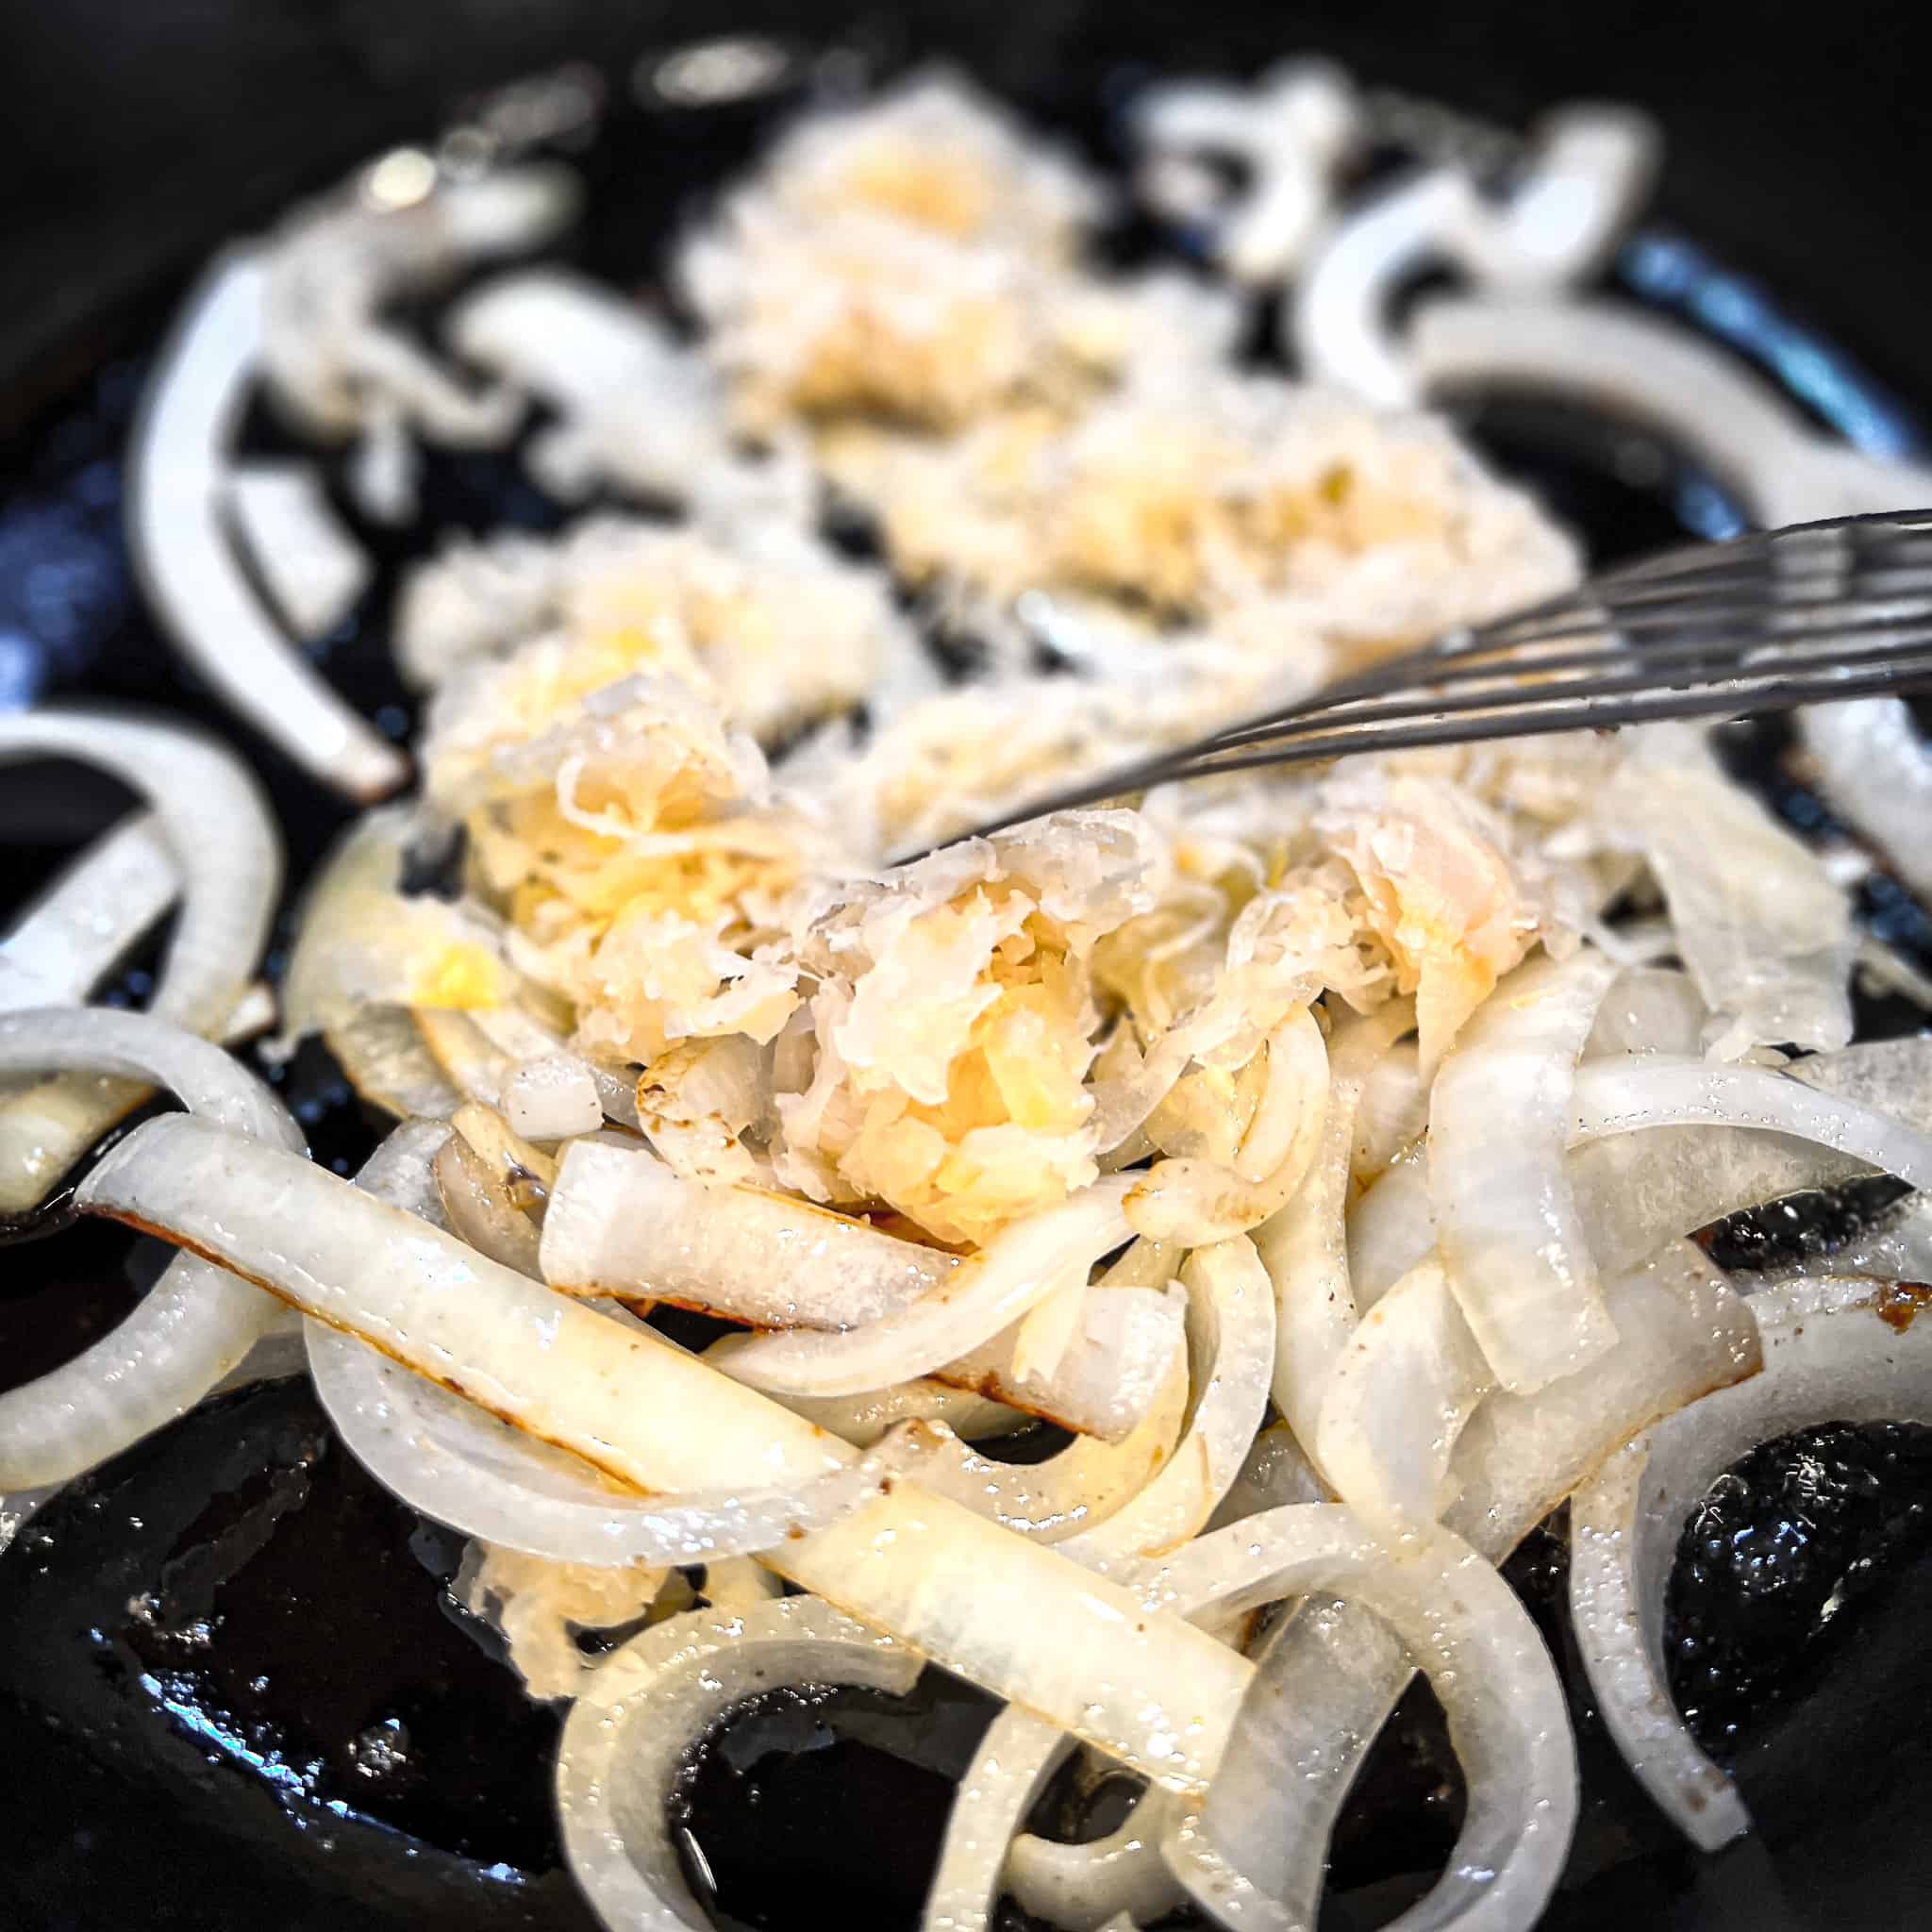 Adding sauerkraut to sauteed onions in cast iron pan.